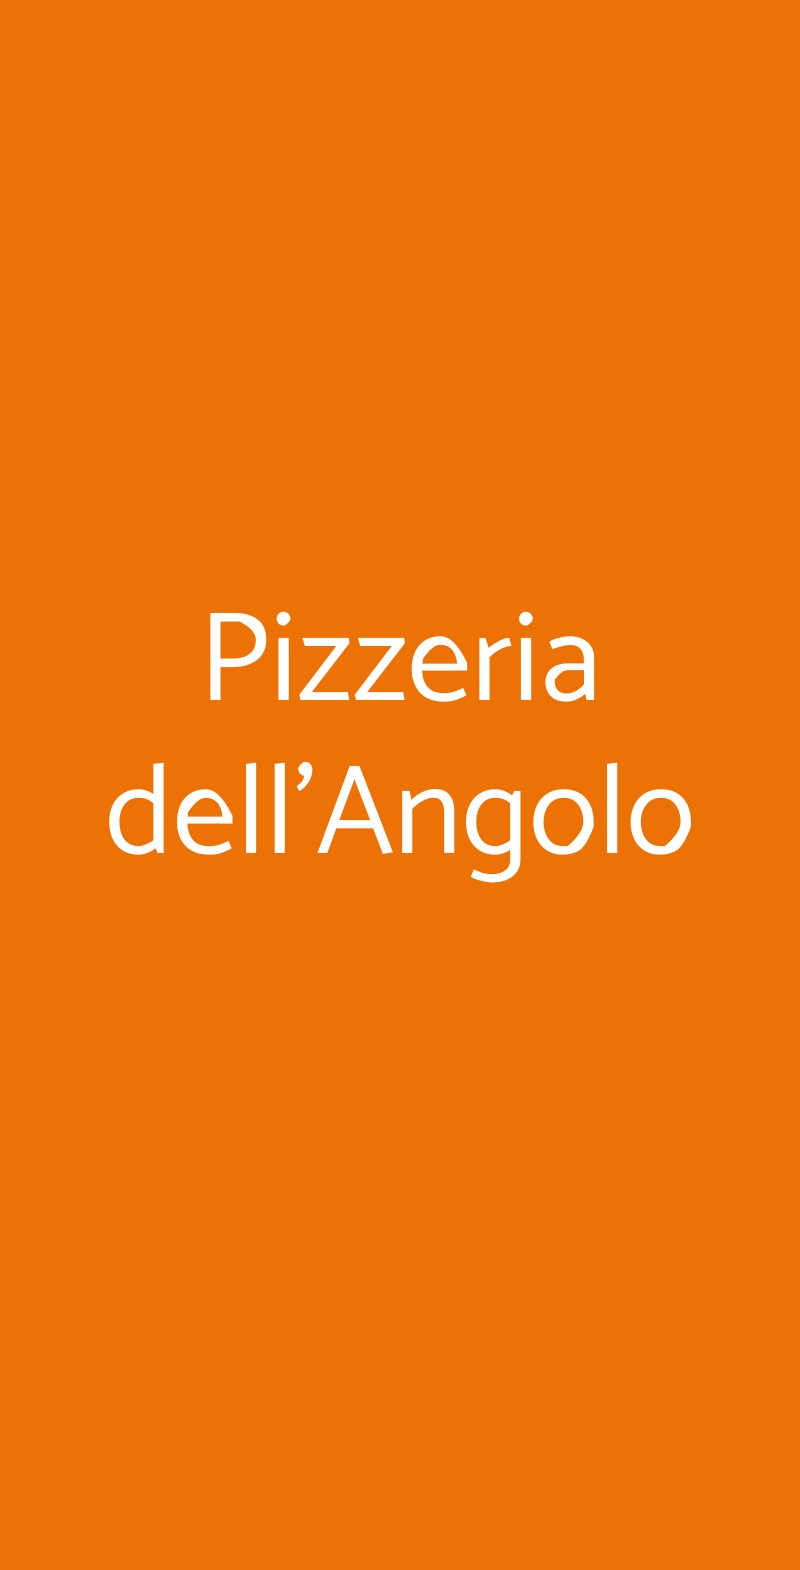 Pizzeria dell'Angolo Torino menù 1 pagina